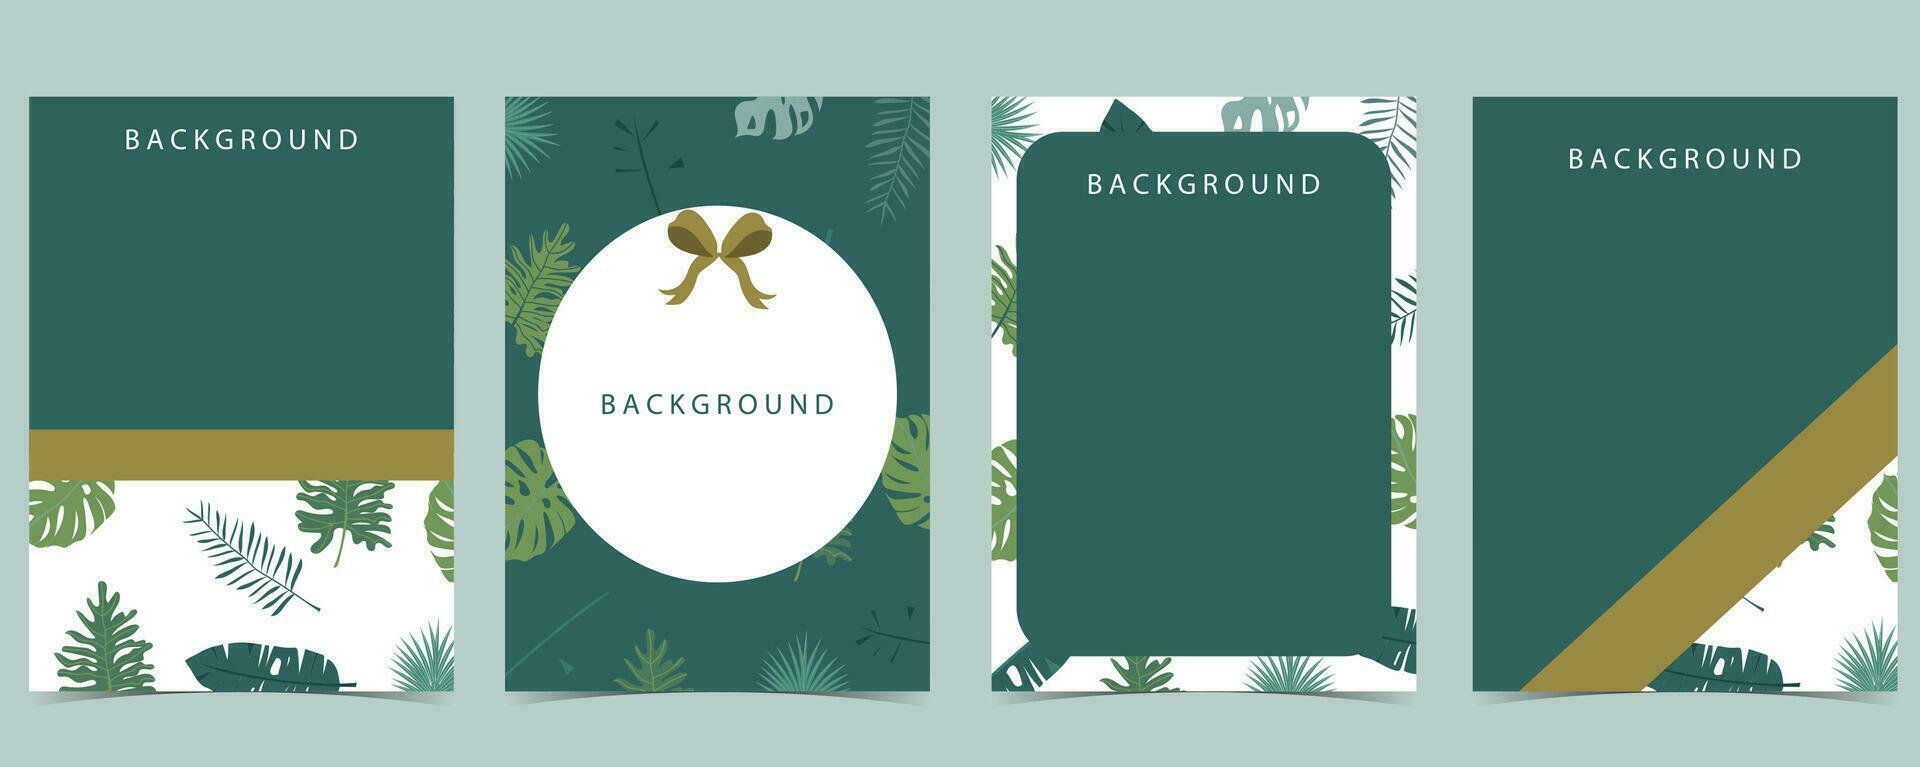 Grün Rahmen Sammlung von Safari Hintergrund set.editable Vektor Illustration zum Geburtstag Einladung, Postkarte und Aufkleber